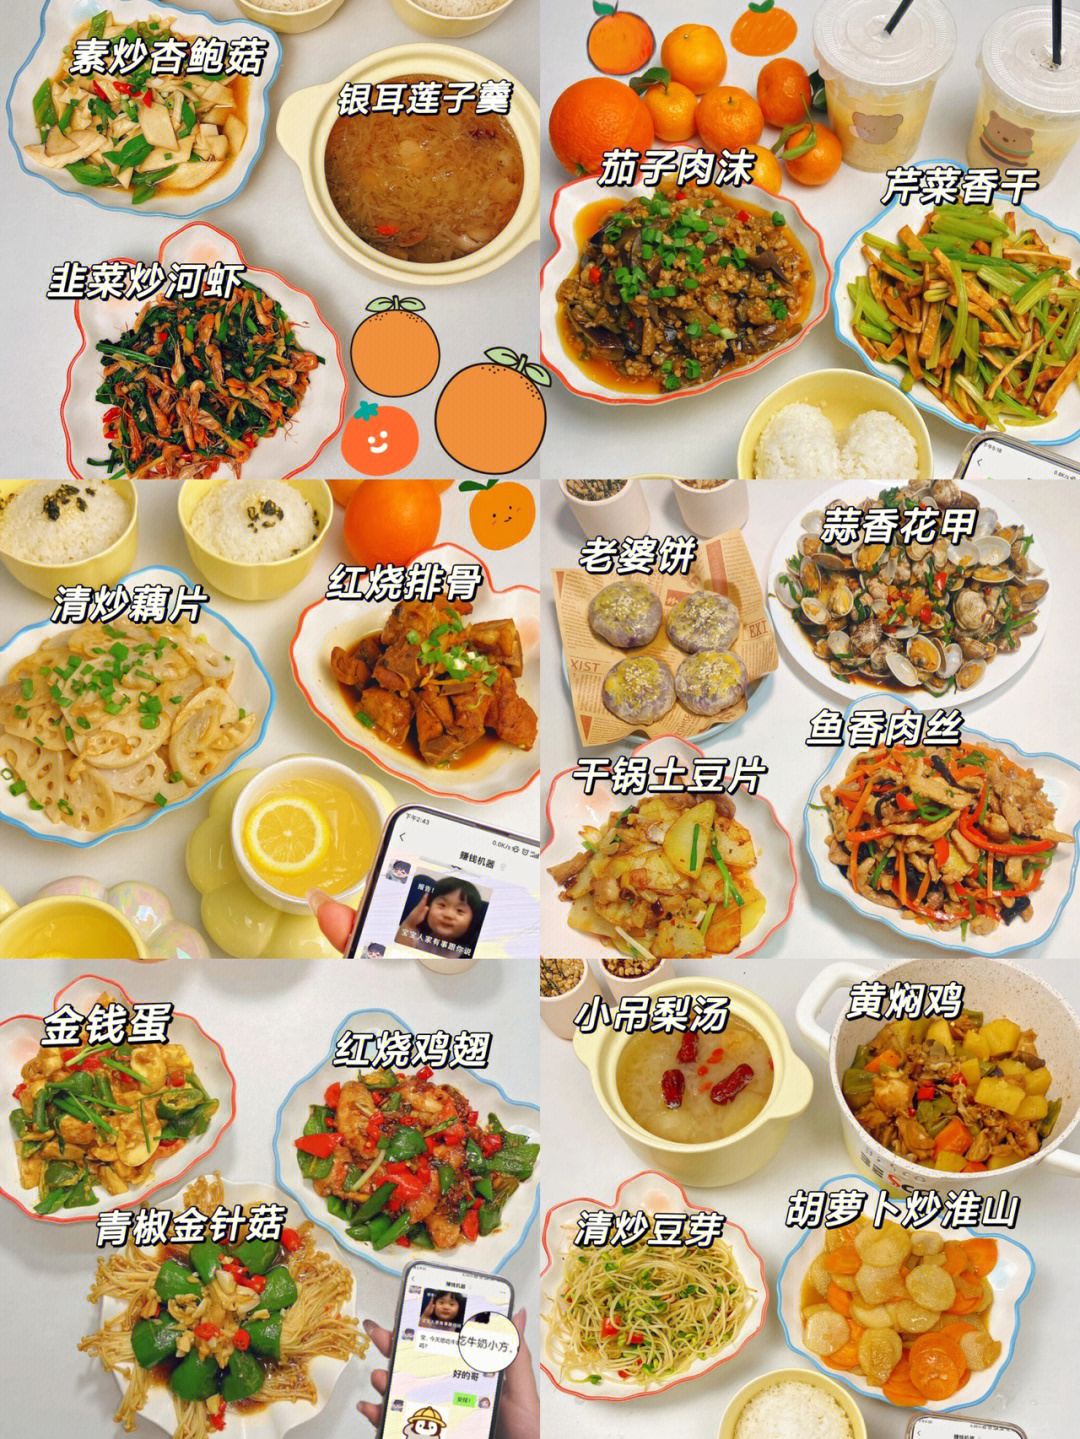 夏季晚餐食谱图片